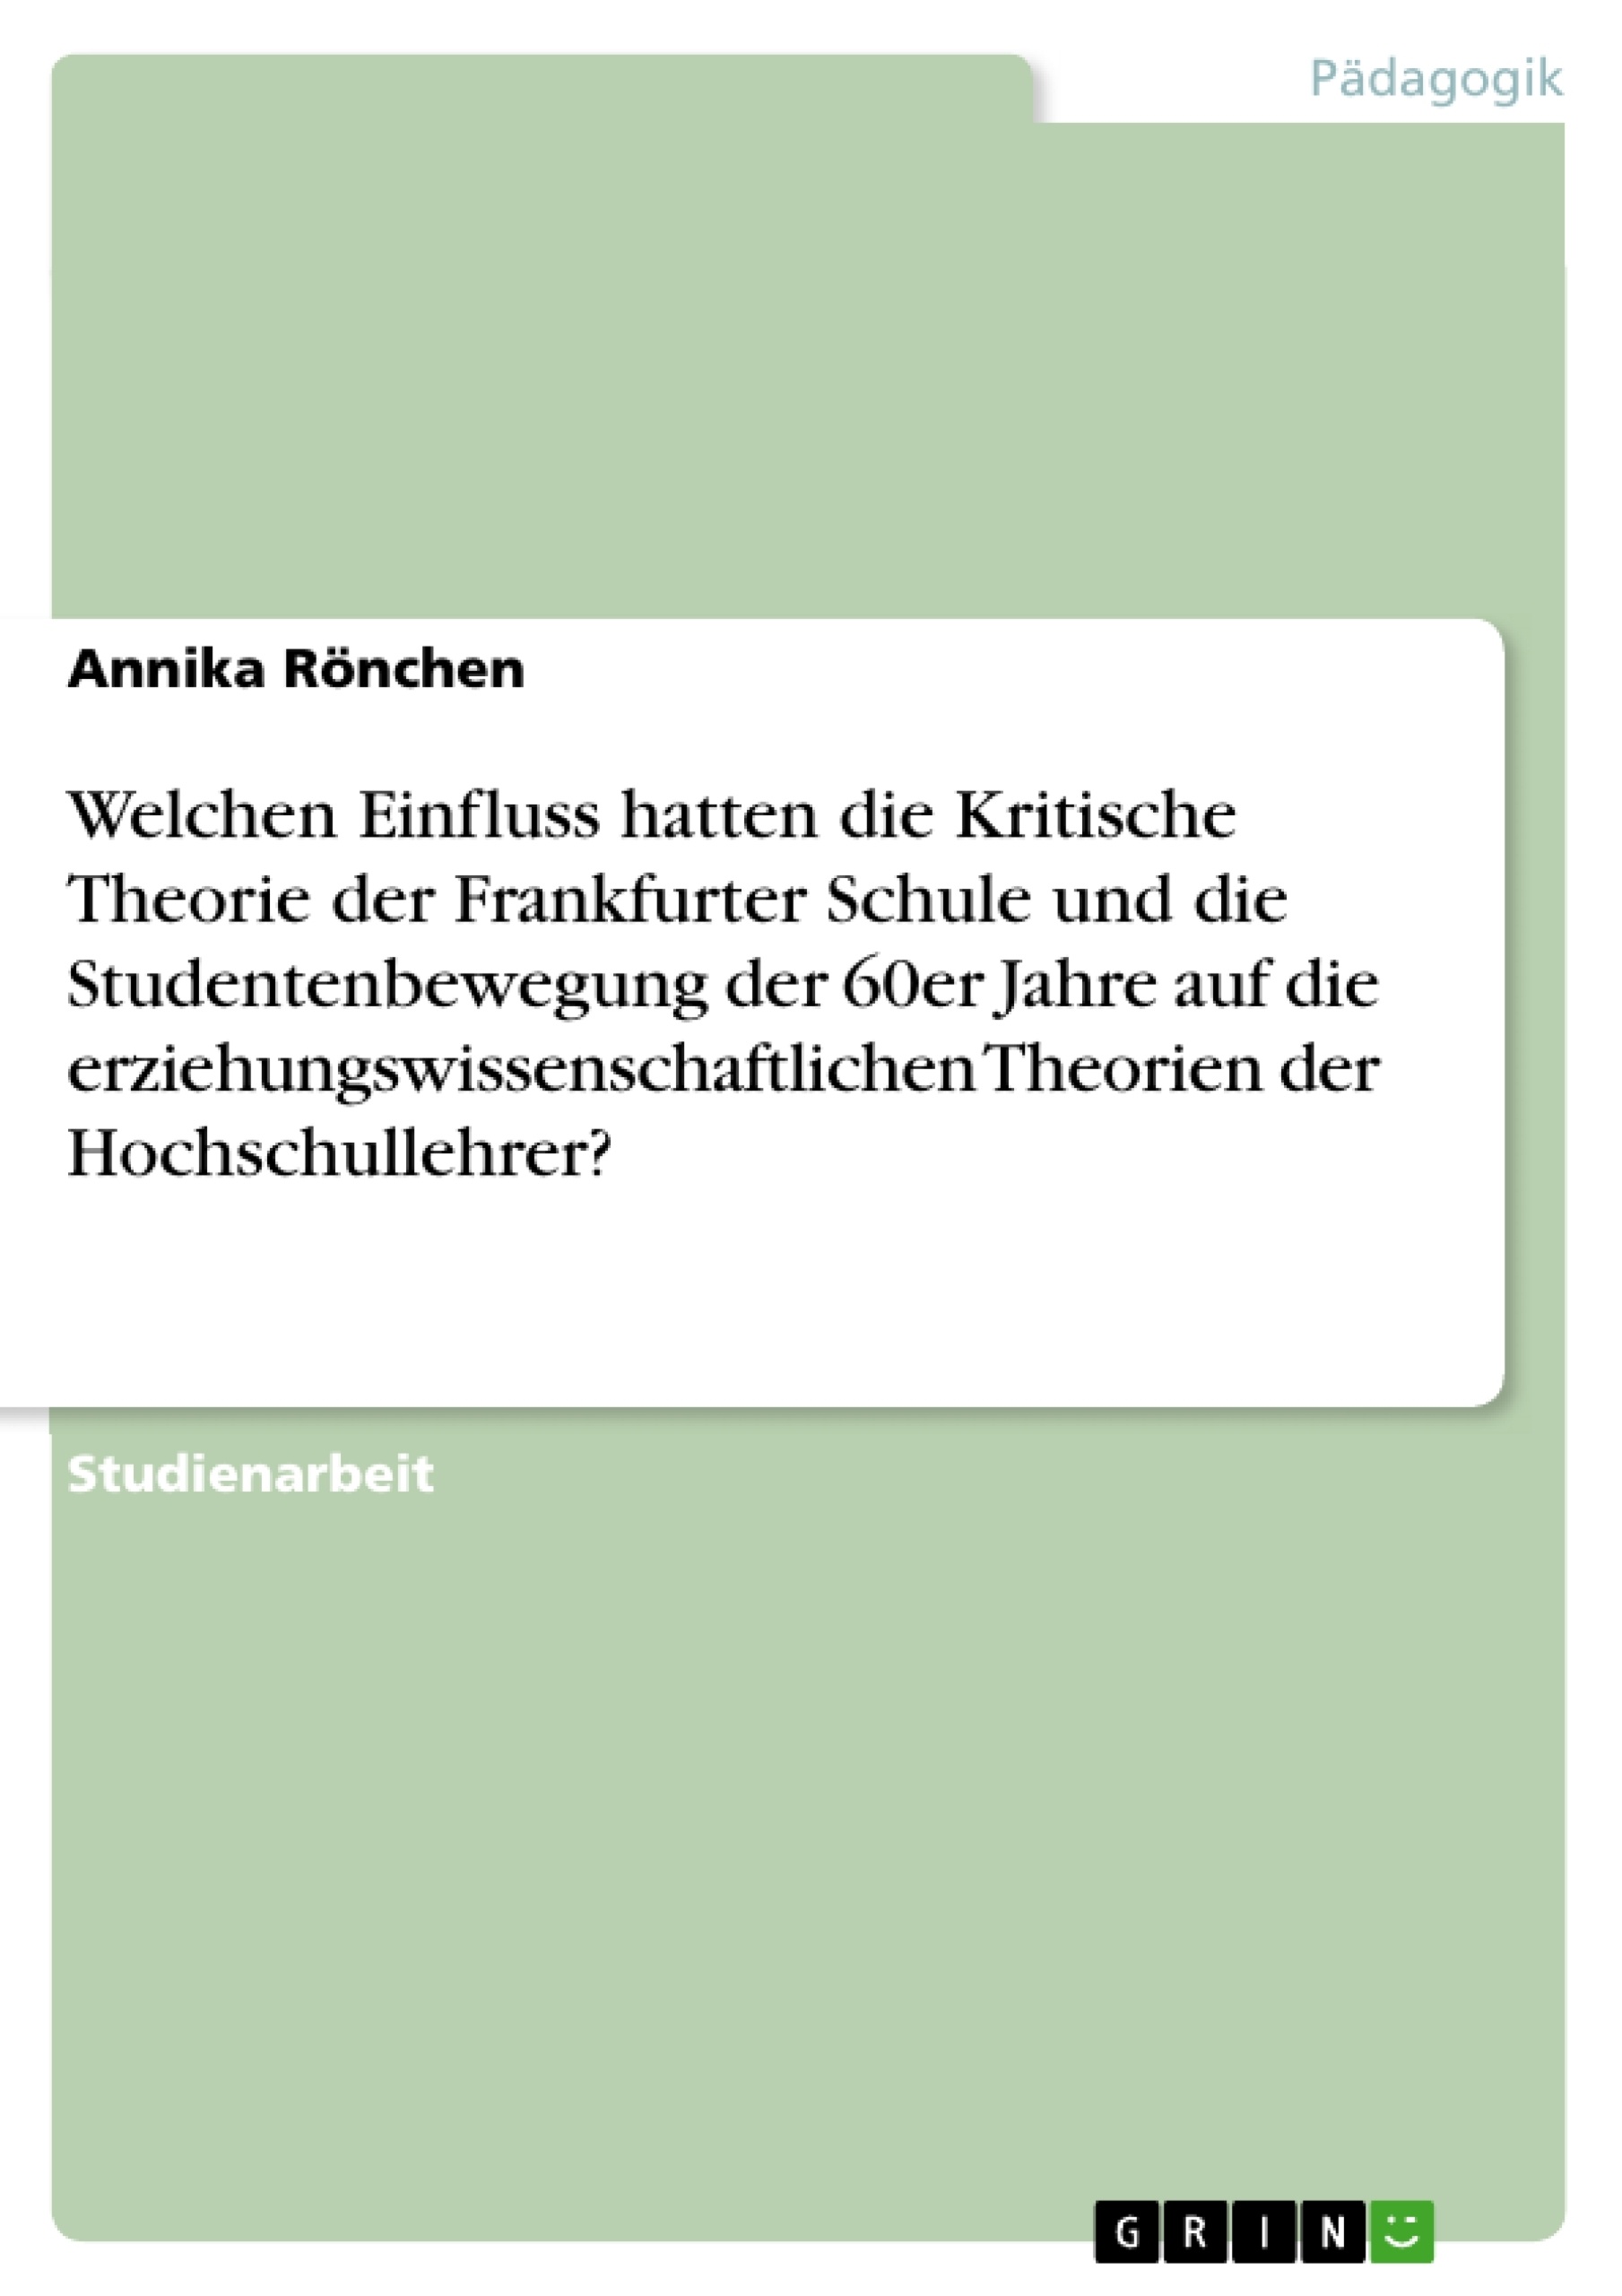 Title: Welchen Einfluss hatten die Kritische Theorie der Frankfurter Schule und die Studentenbewegung der 60er Jahre auf die erziehungswissenschaftlichen Theorien der Hochschullehrer?